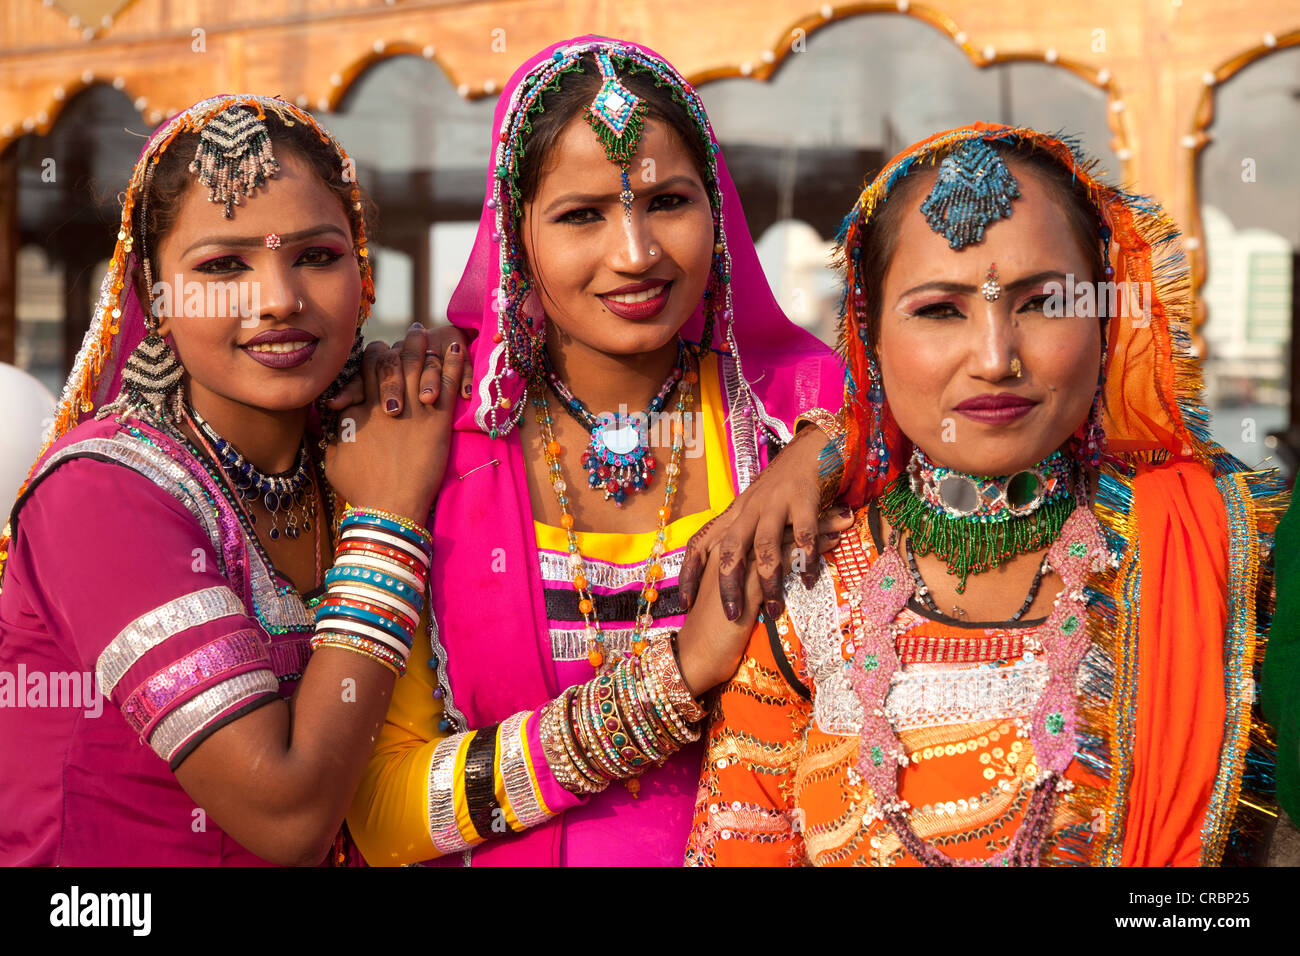 Danseurs indiens portant des vêtements traditionnels, des travailleurs invités du Rajasthan à Dubaï, Émirats arabes unis, au Moyen-Orient, en Asie Banque D'Images